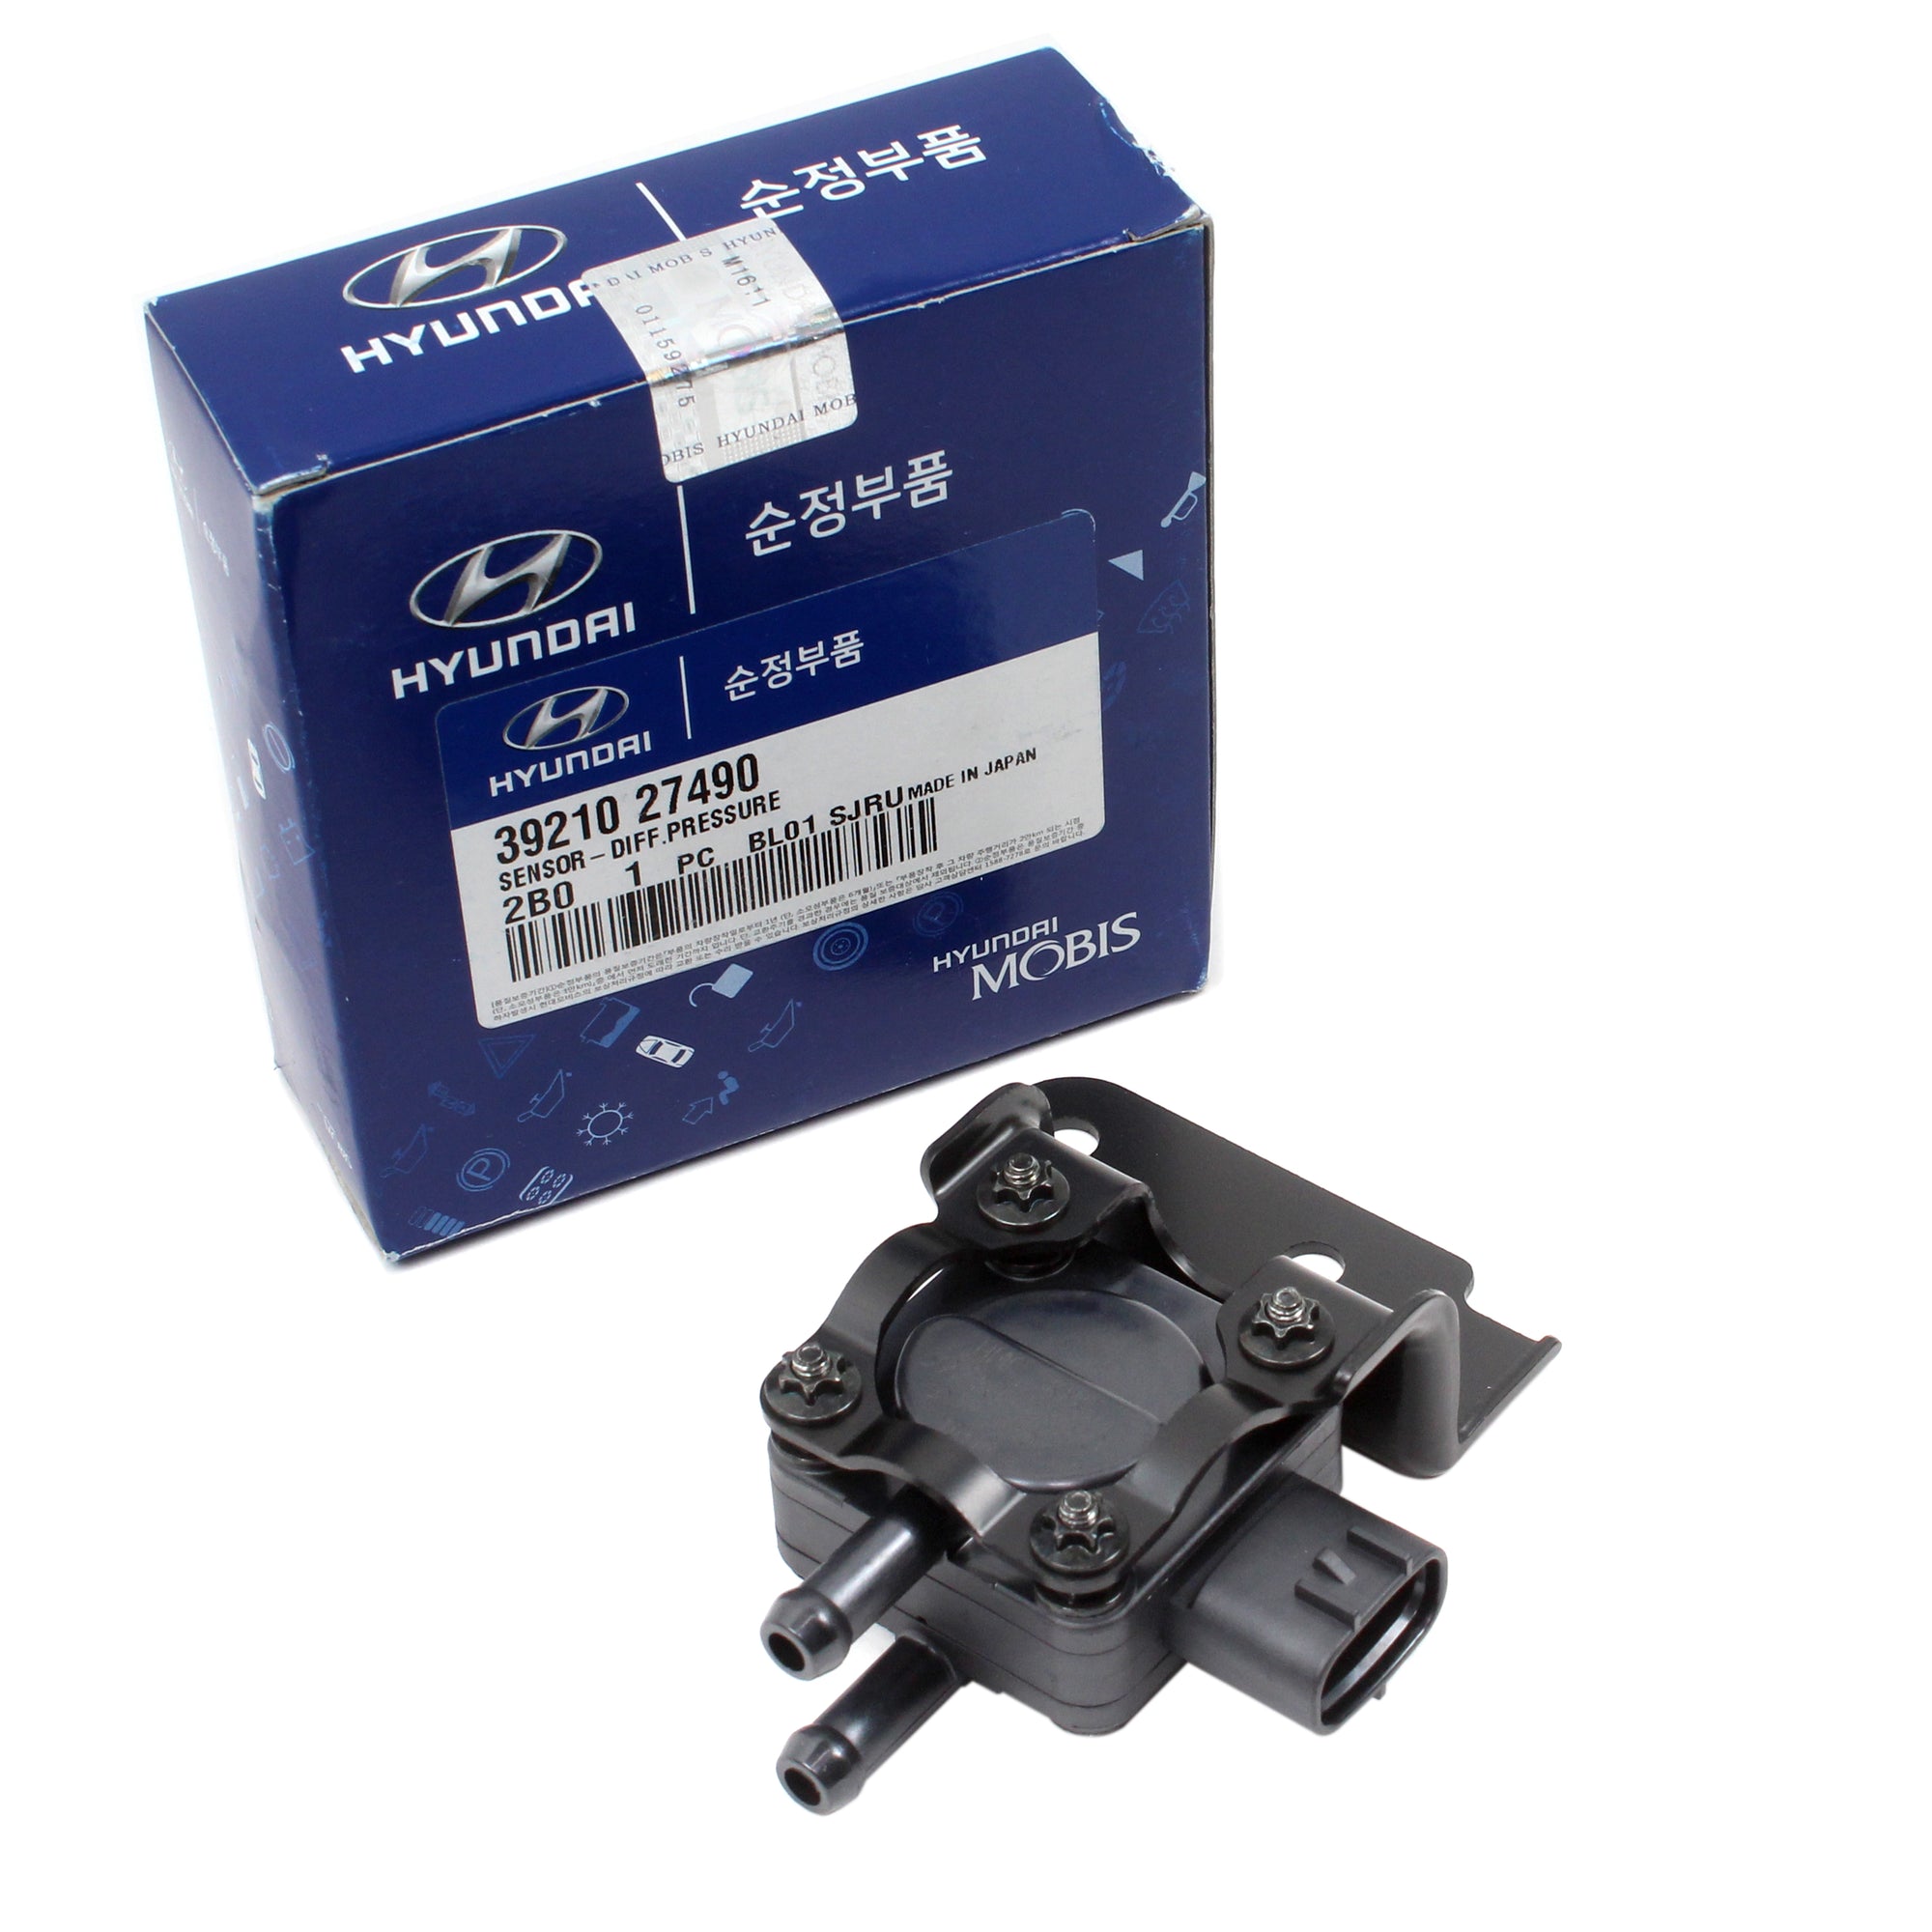 GENUINE Differential Pressure Sensor for Hyundai Santa Fe Carens OEM 39210-27490